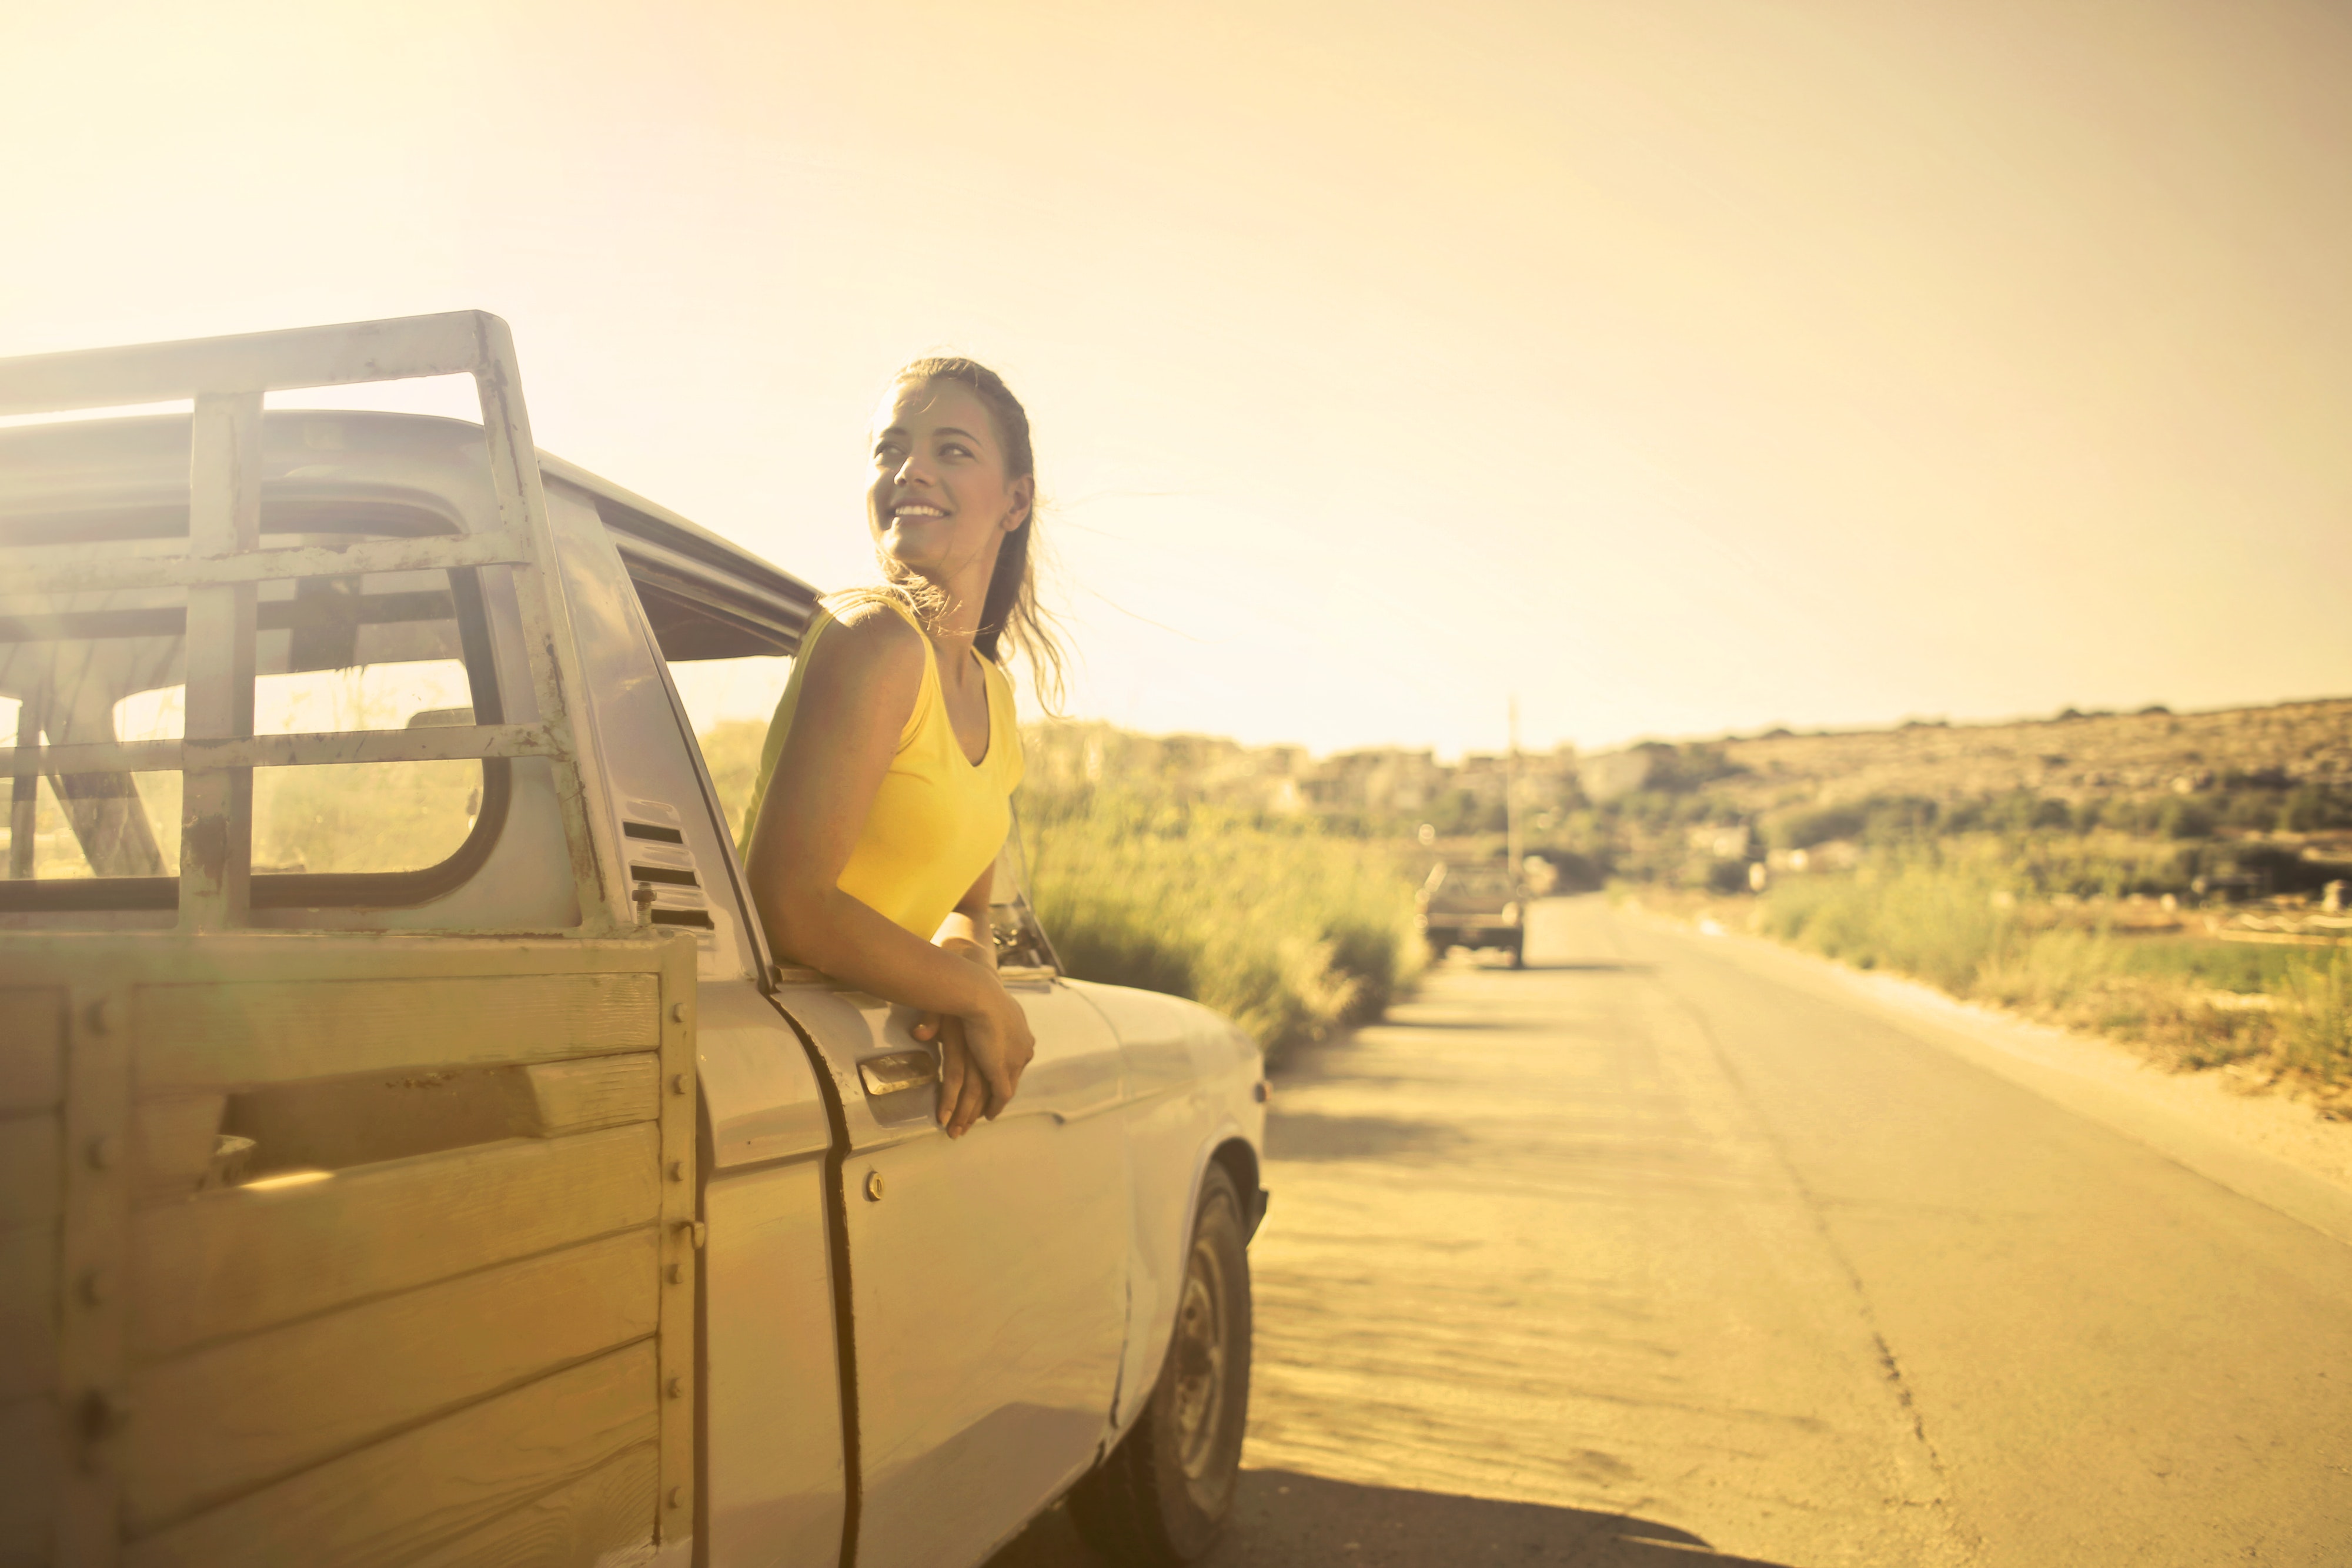 Woman wearing yellow shirt inside pickup truck photo